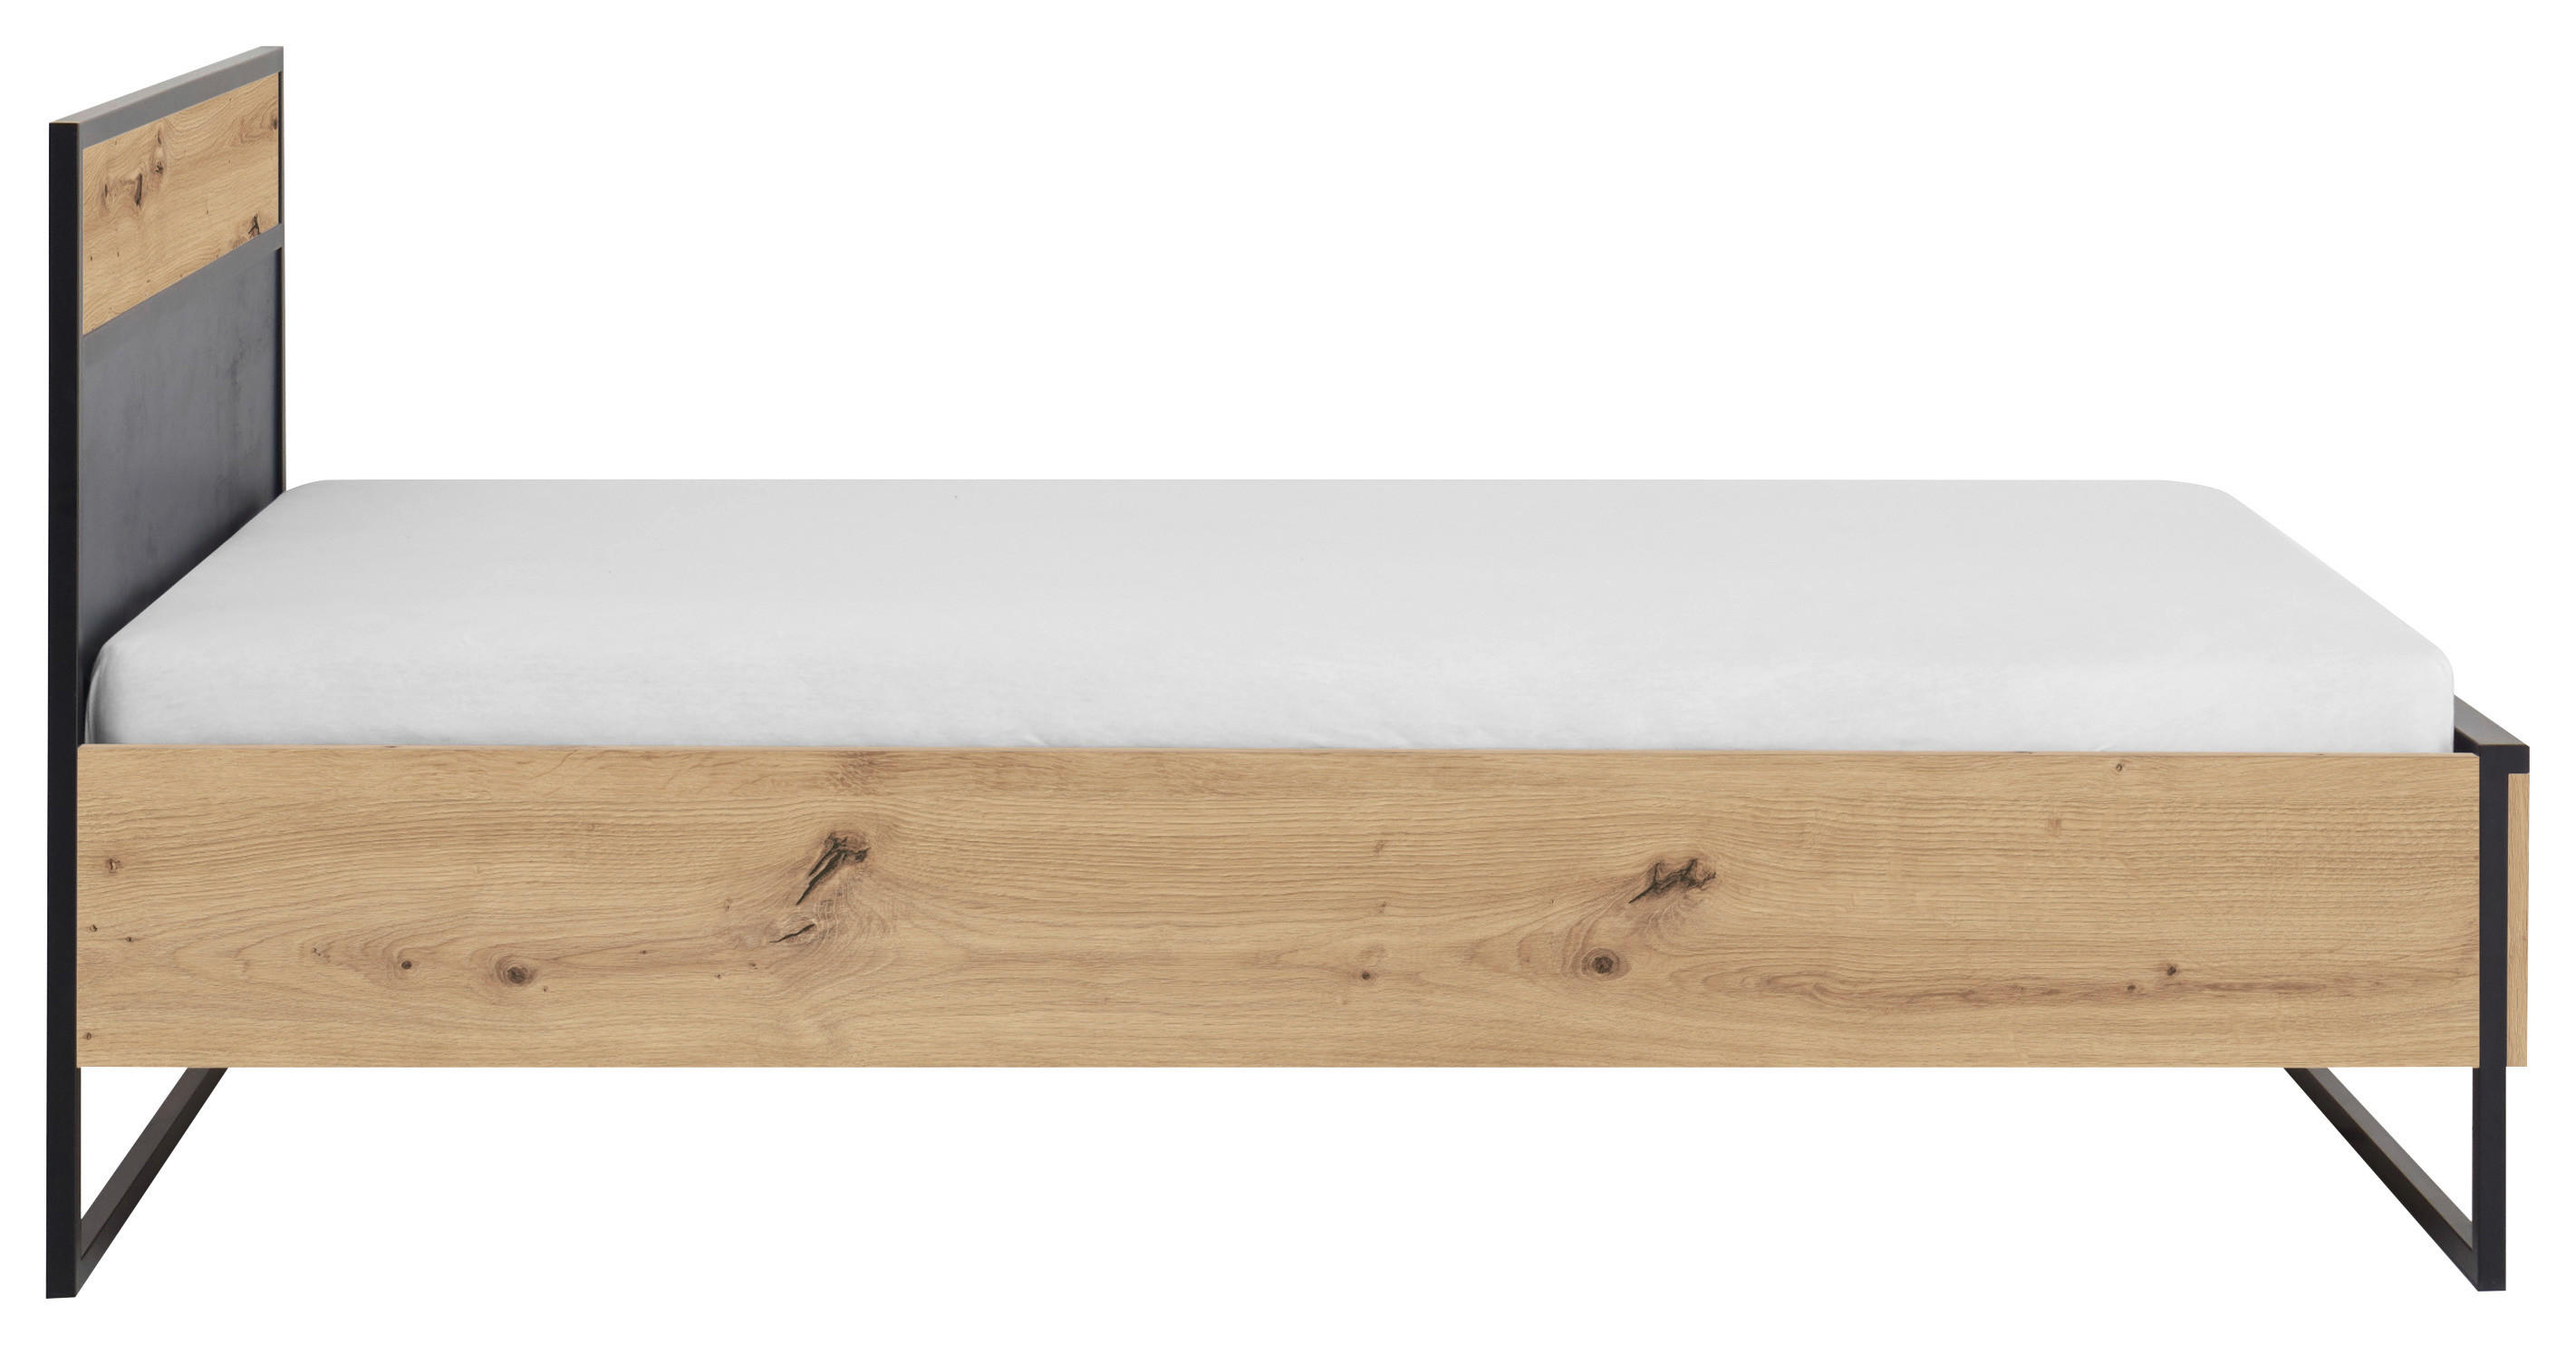 POSTEL 140/200 cm, antracitová, barvy dubu - barvy dubu/antracitová, Trend, kov/kompozitní dřevo (140/200cm) - Xora